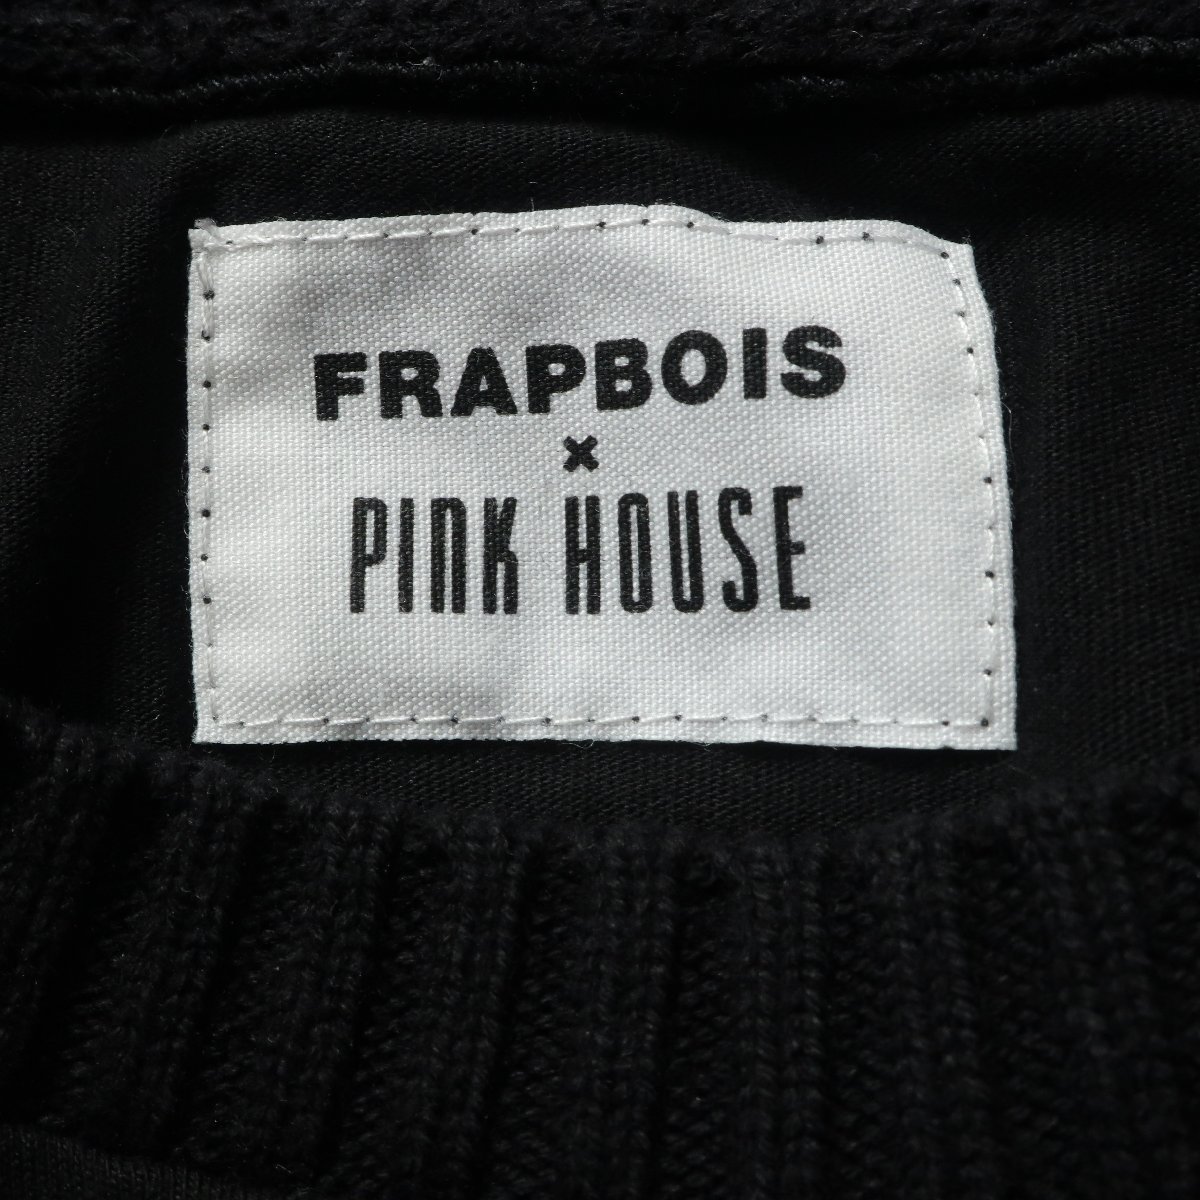 【美品】ピンクハウス×フラボア FRAPBOIS★Tシャツ カットソー 1サイズ ロゴ刺しゅう 袖飾り 個性的デザイン 黒系 z4899_画像8